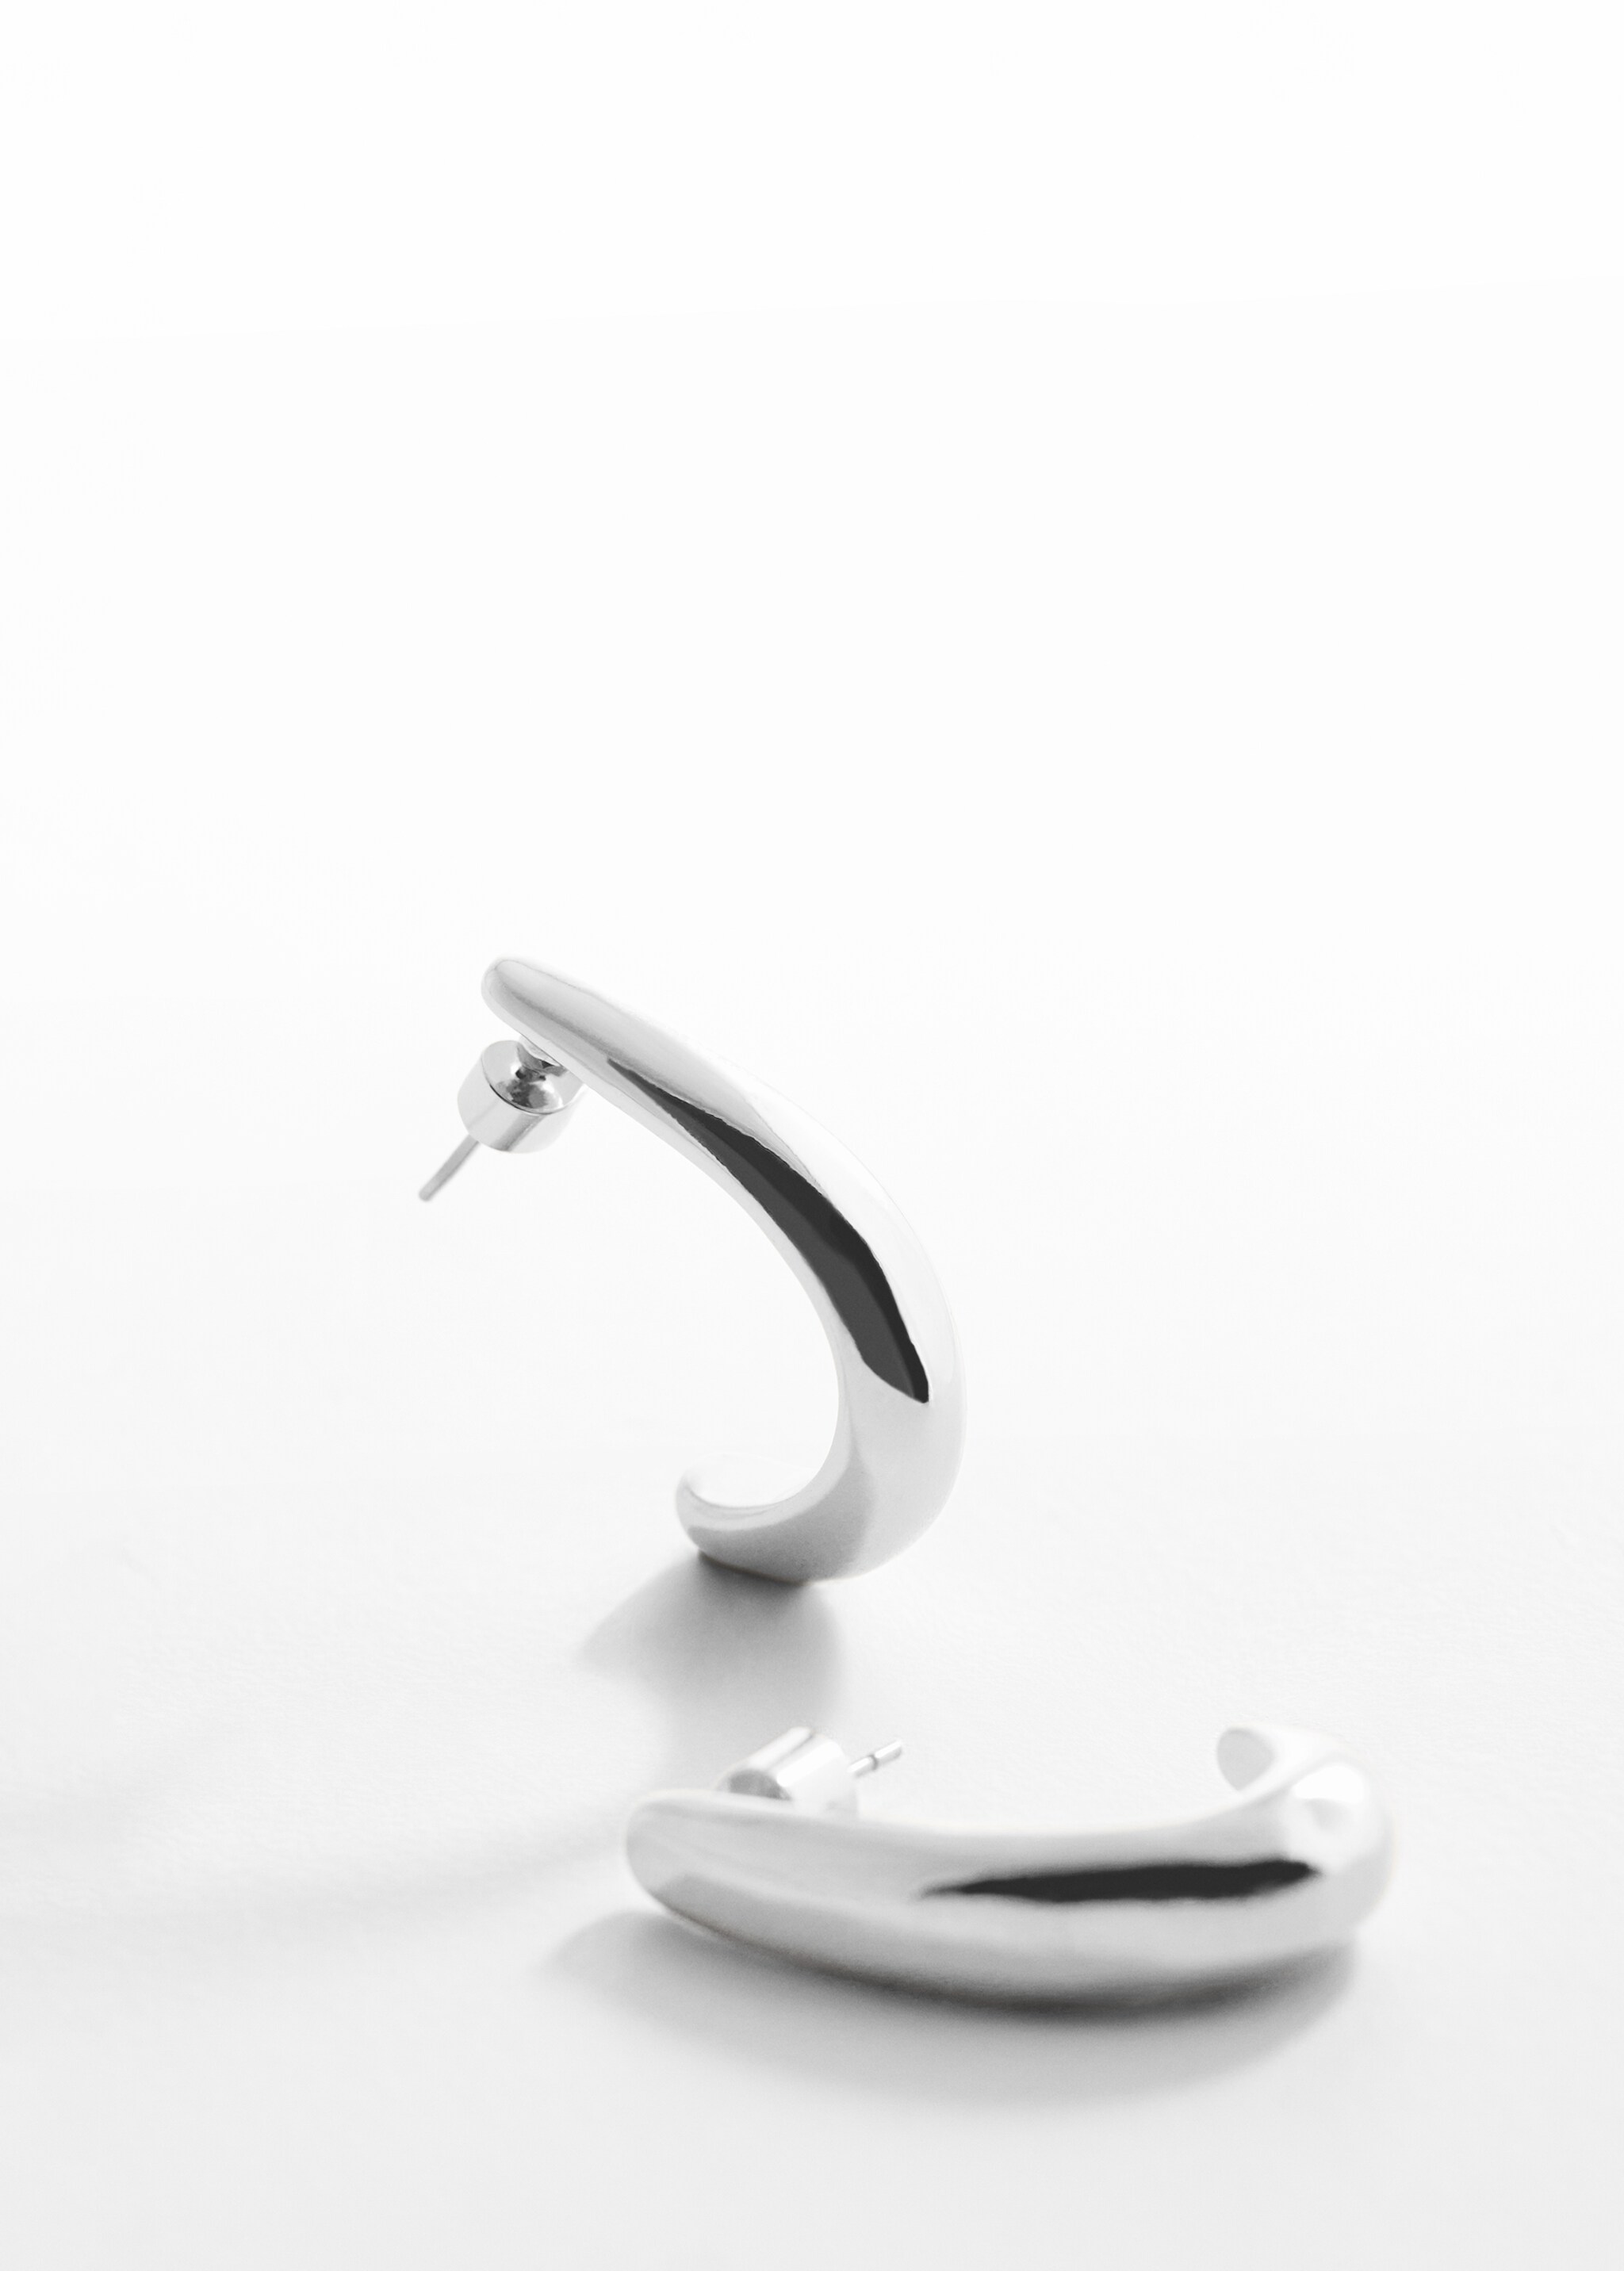 Oval hoop earrings - Medium plane